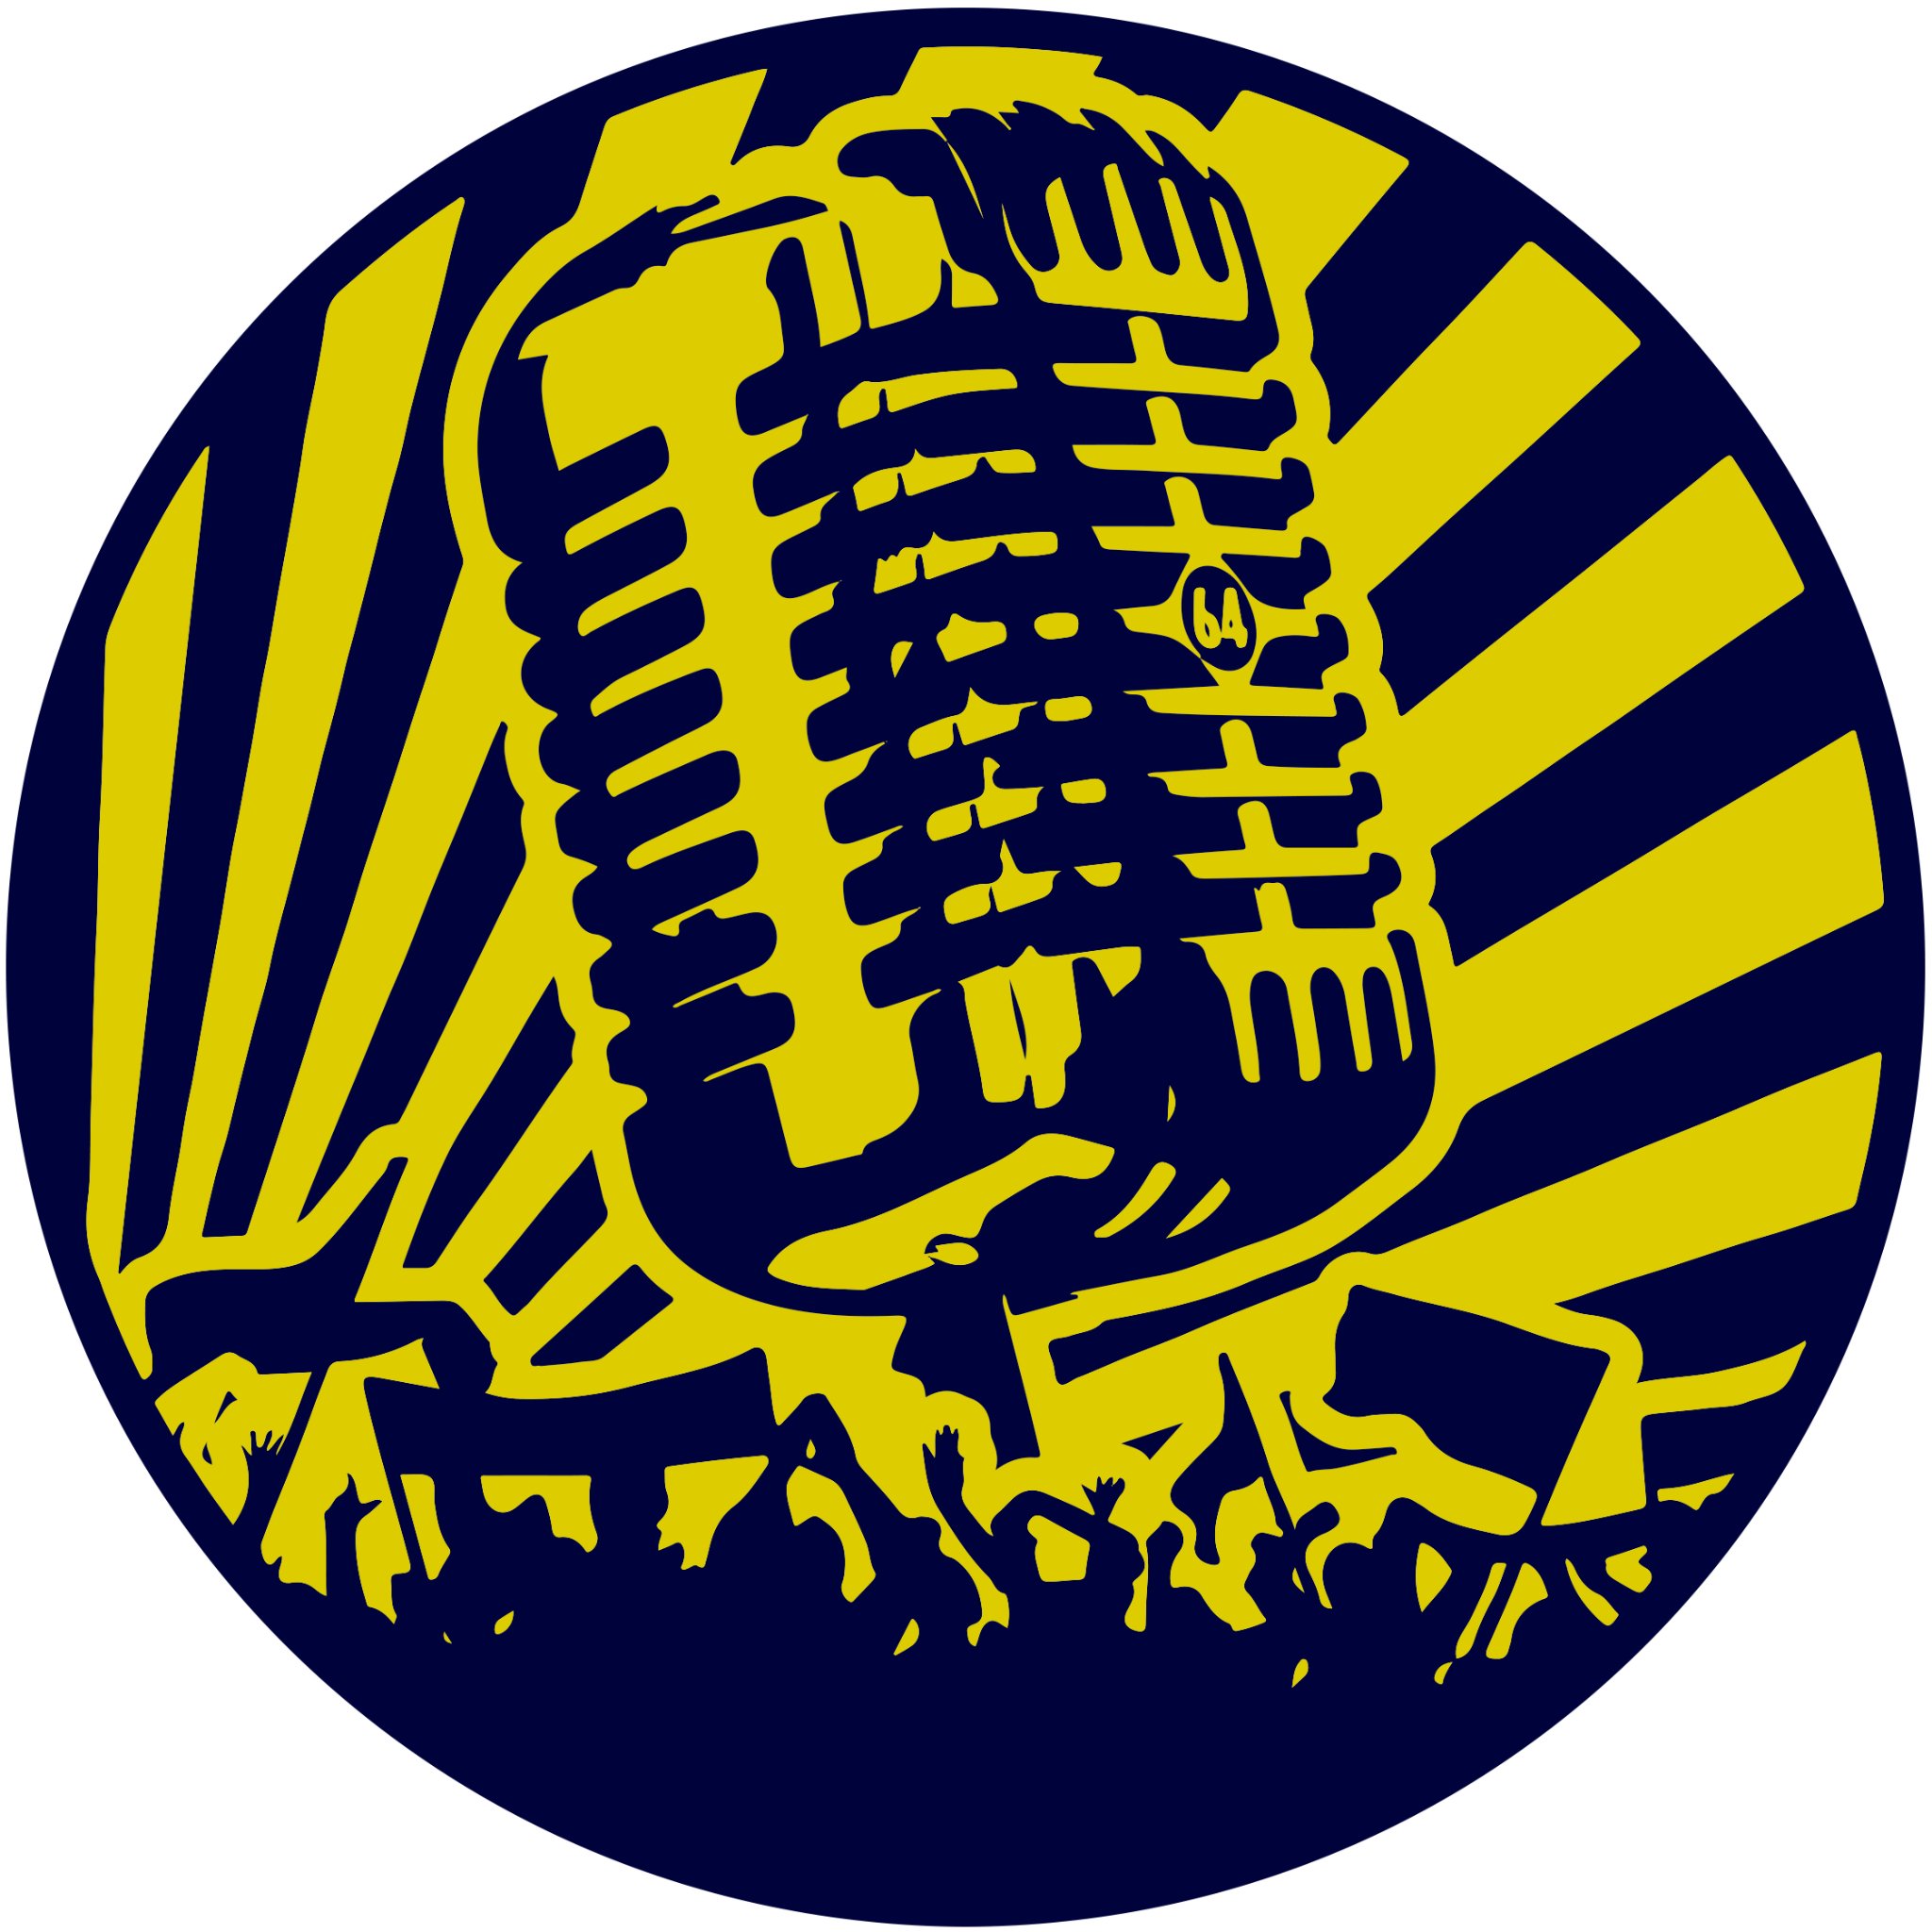 En podcast om at være fan af Brøndby IF - optaget, produceret og udgivet af dine medfans. Og helt og aldeles i gul og blå 💛💙